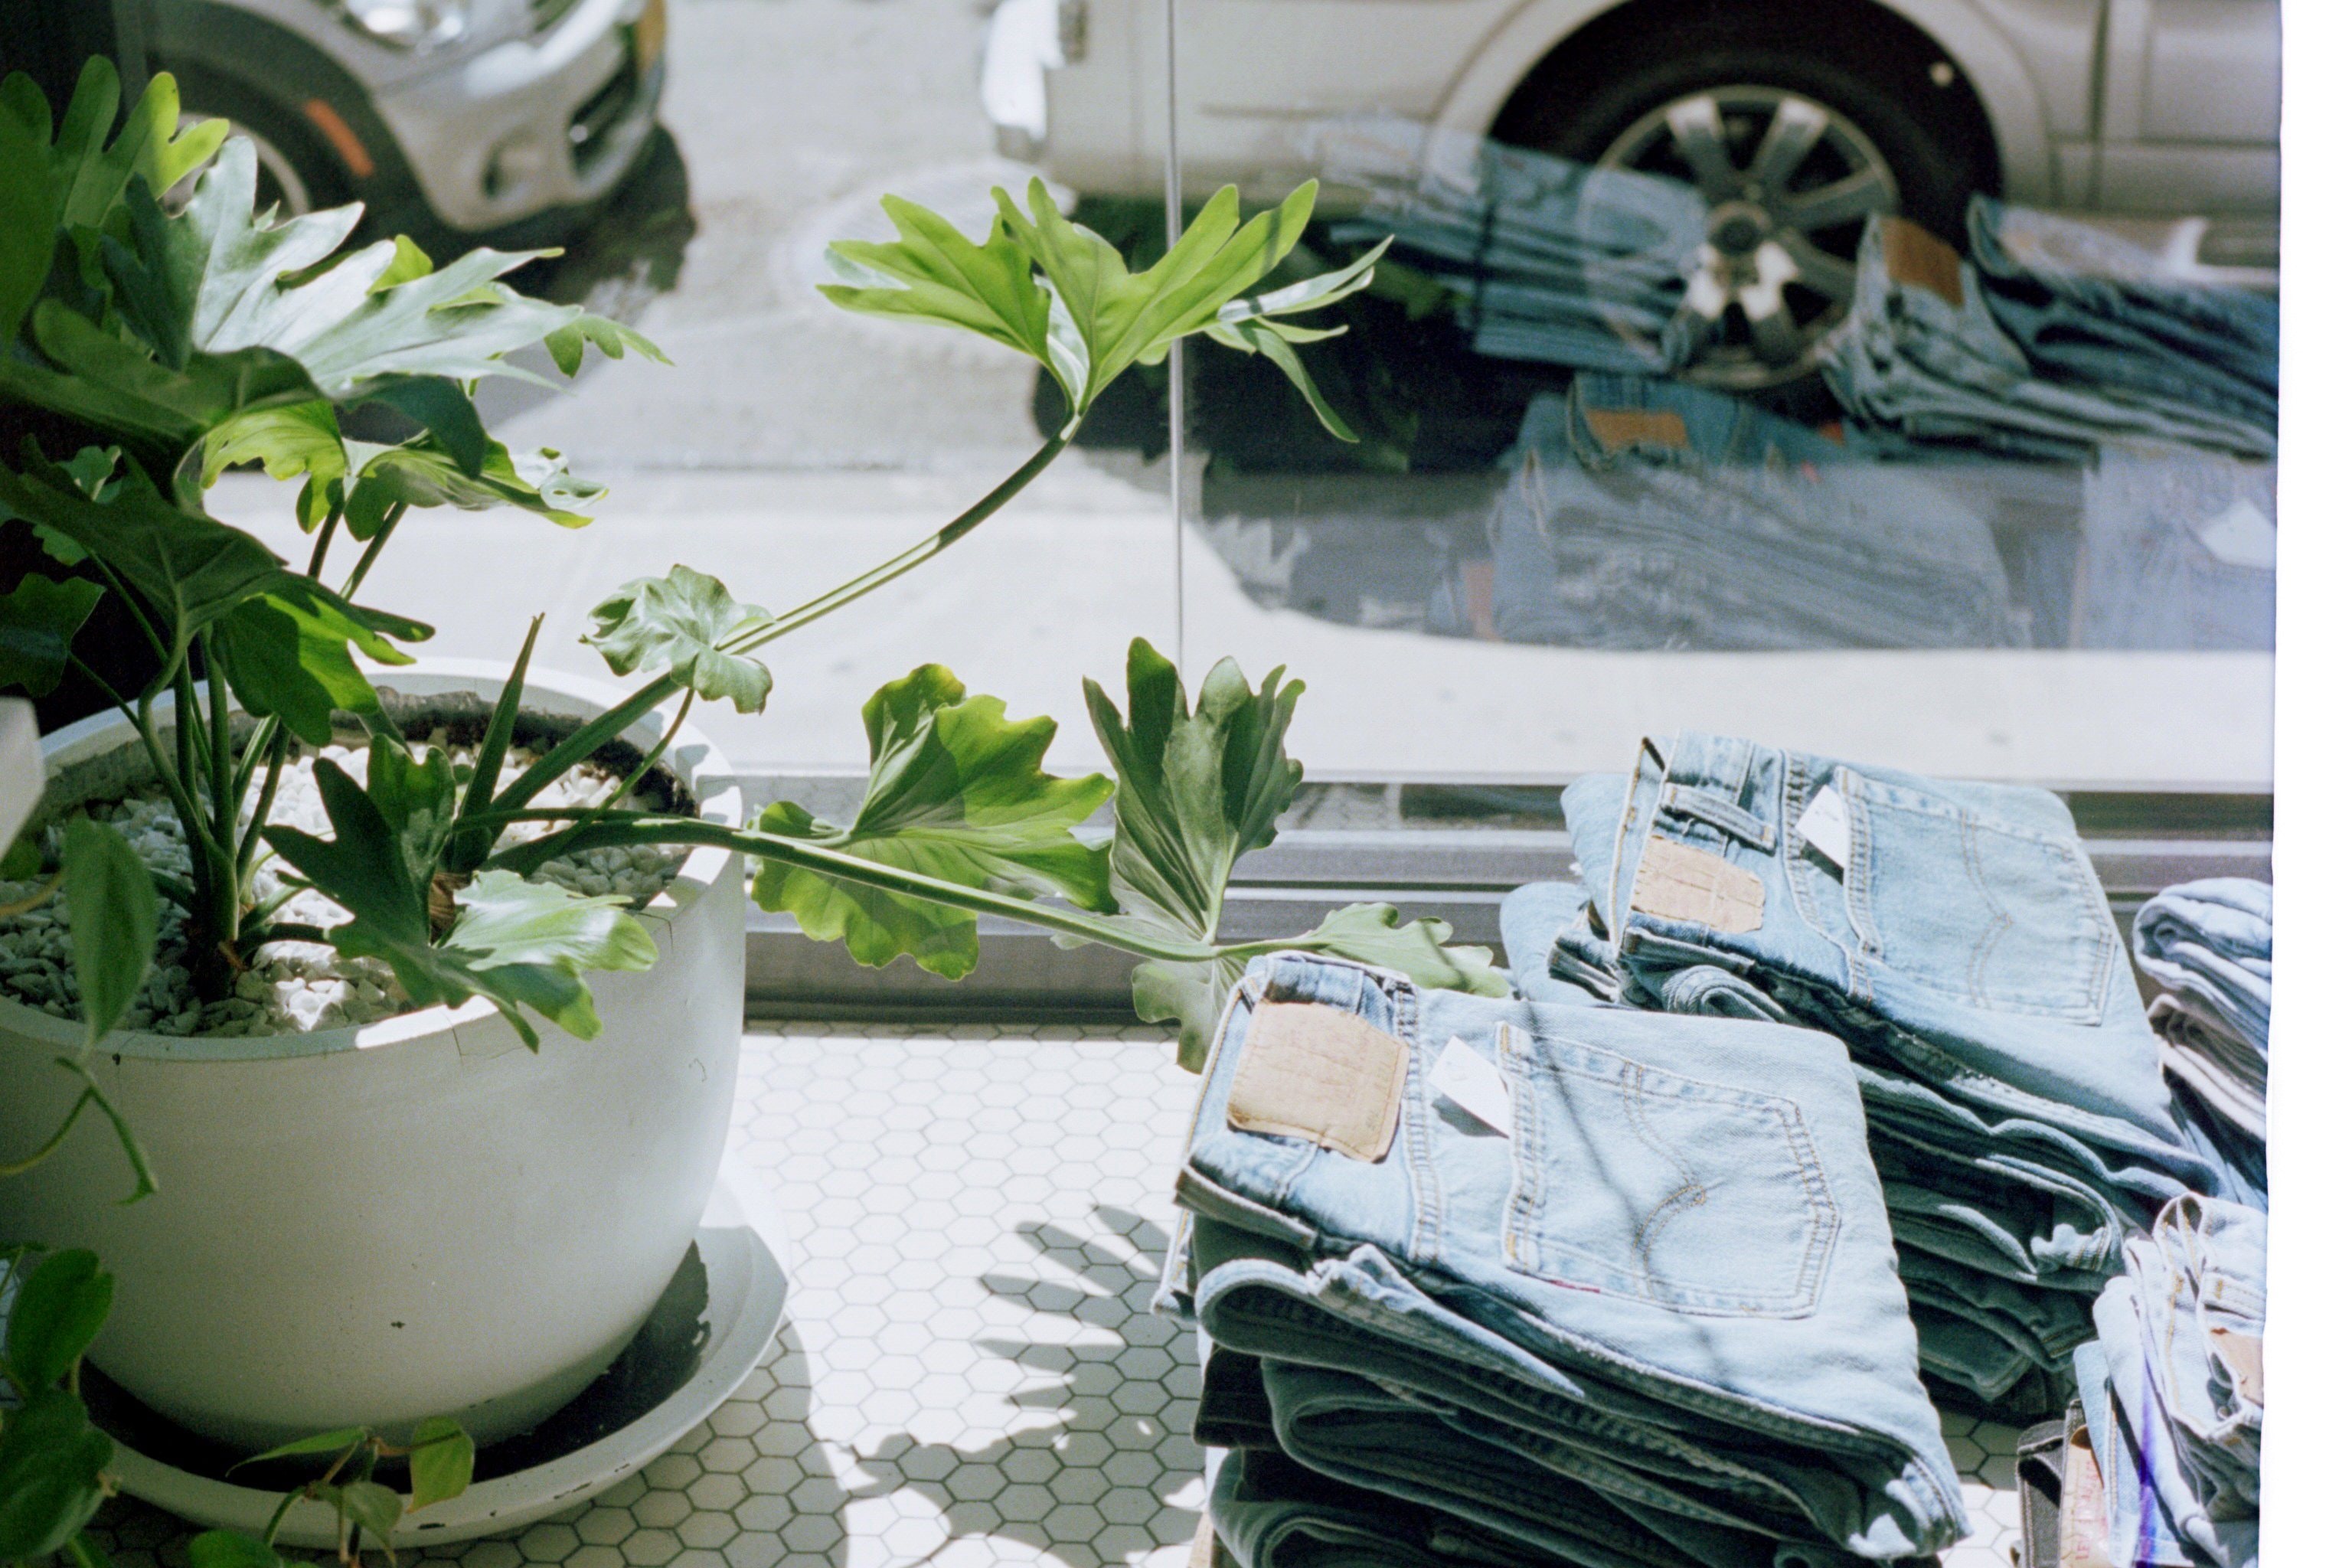 Grønn plante i potte og jeansbukser i vinduskarm